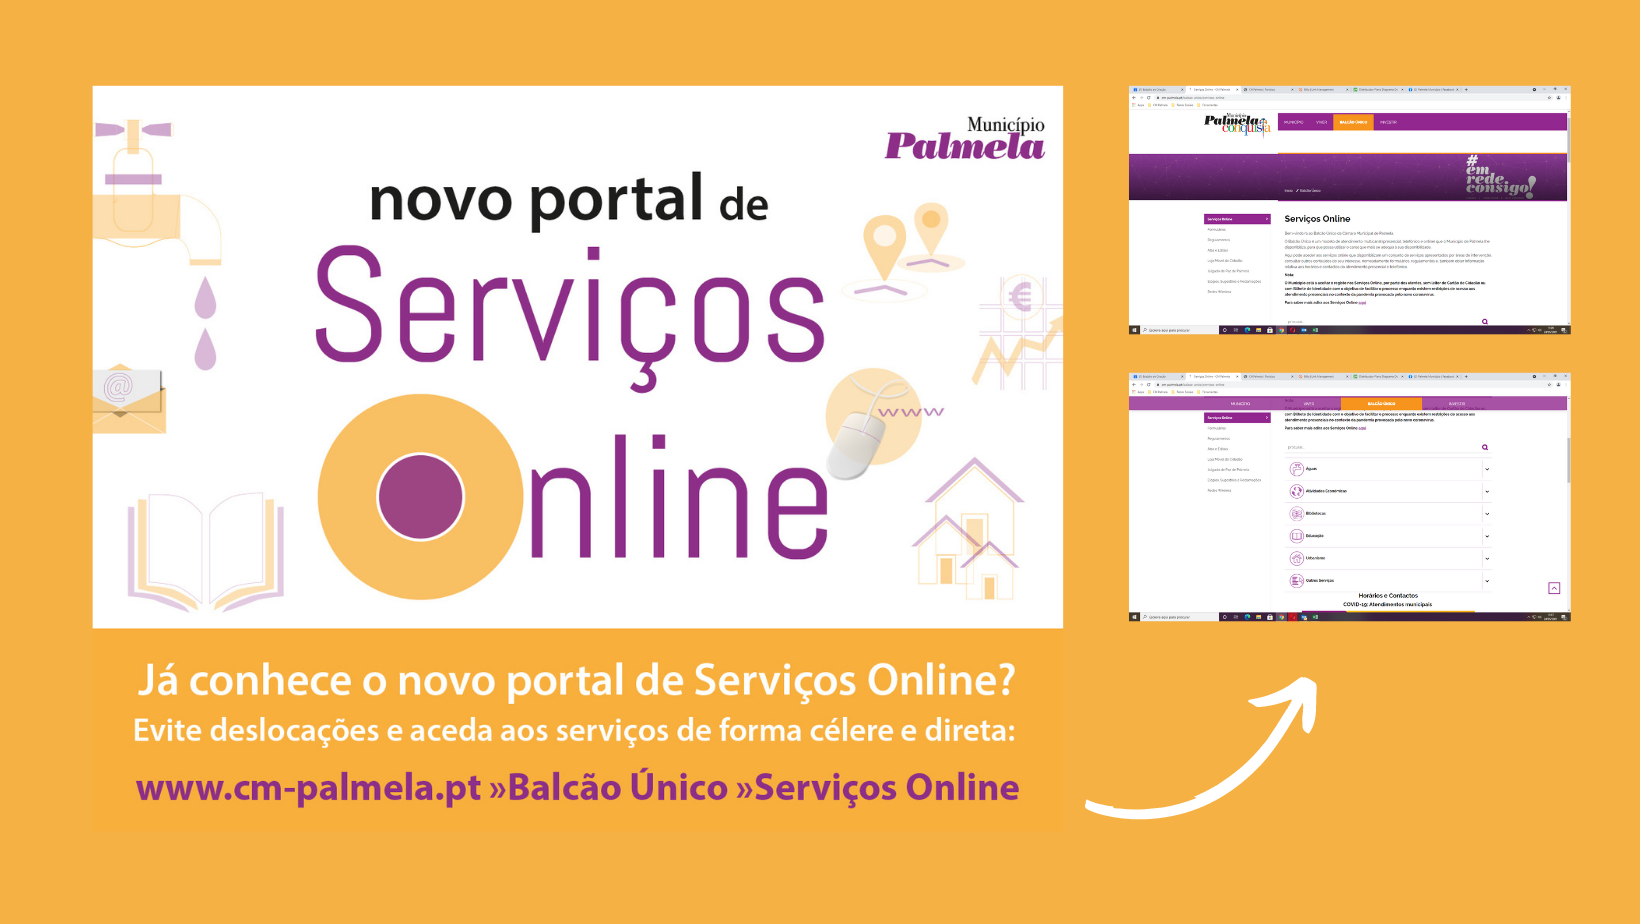 Maior eficácia e rapidez - Município atualiza Portal de Serviços online 